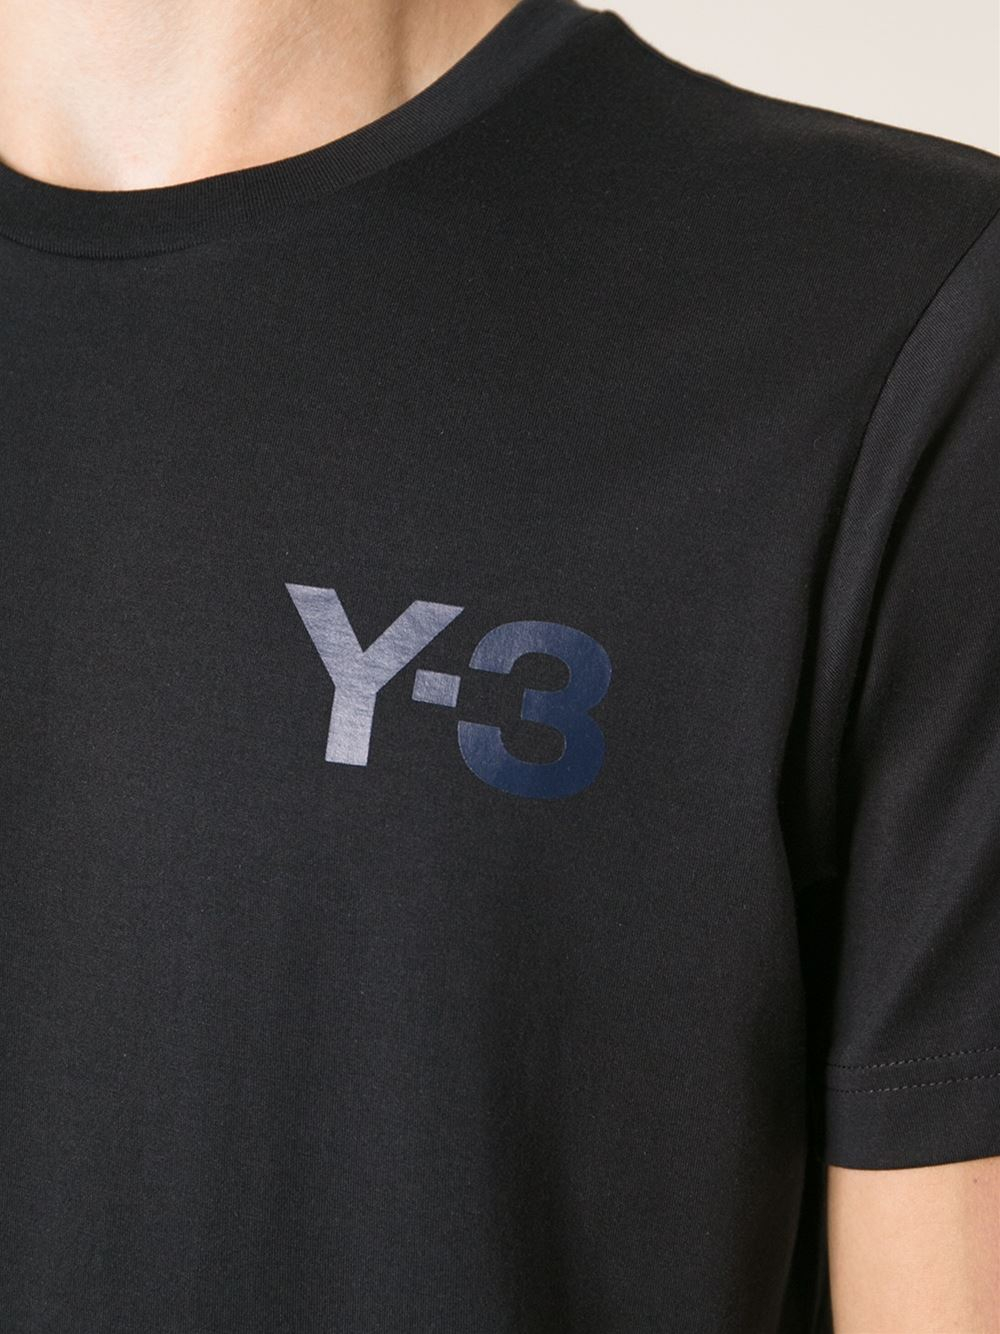 y3 logo t shirt